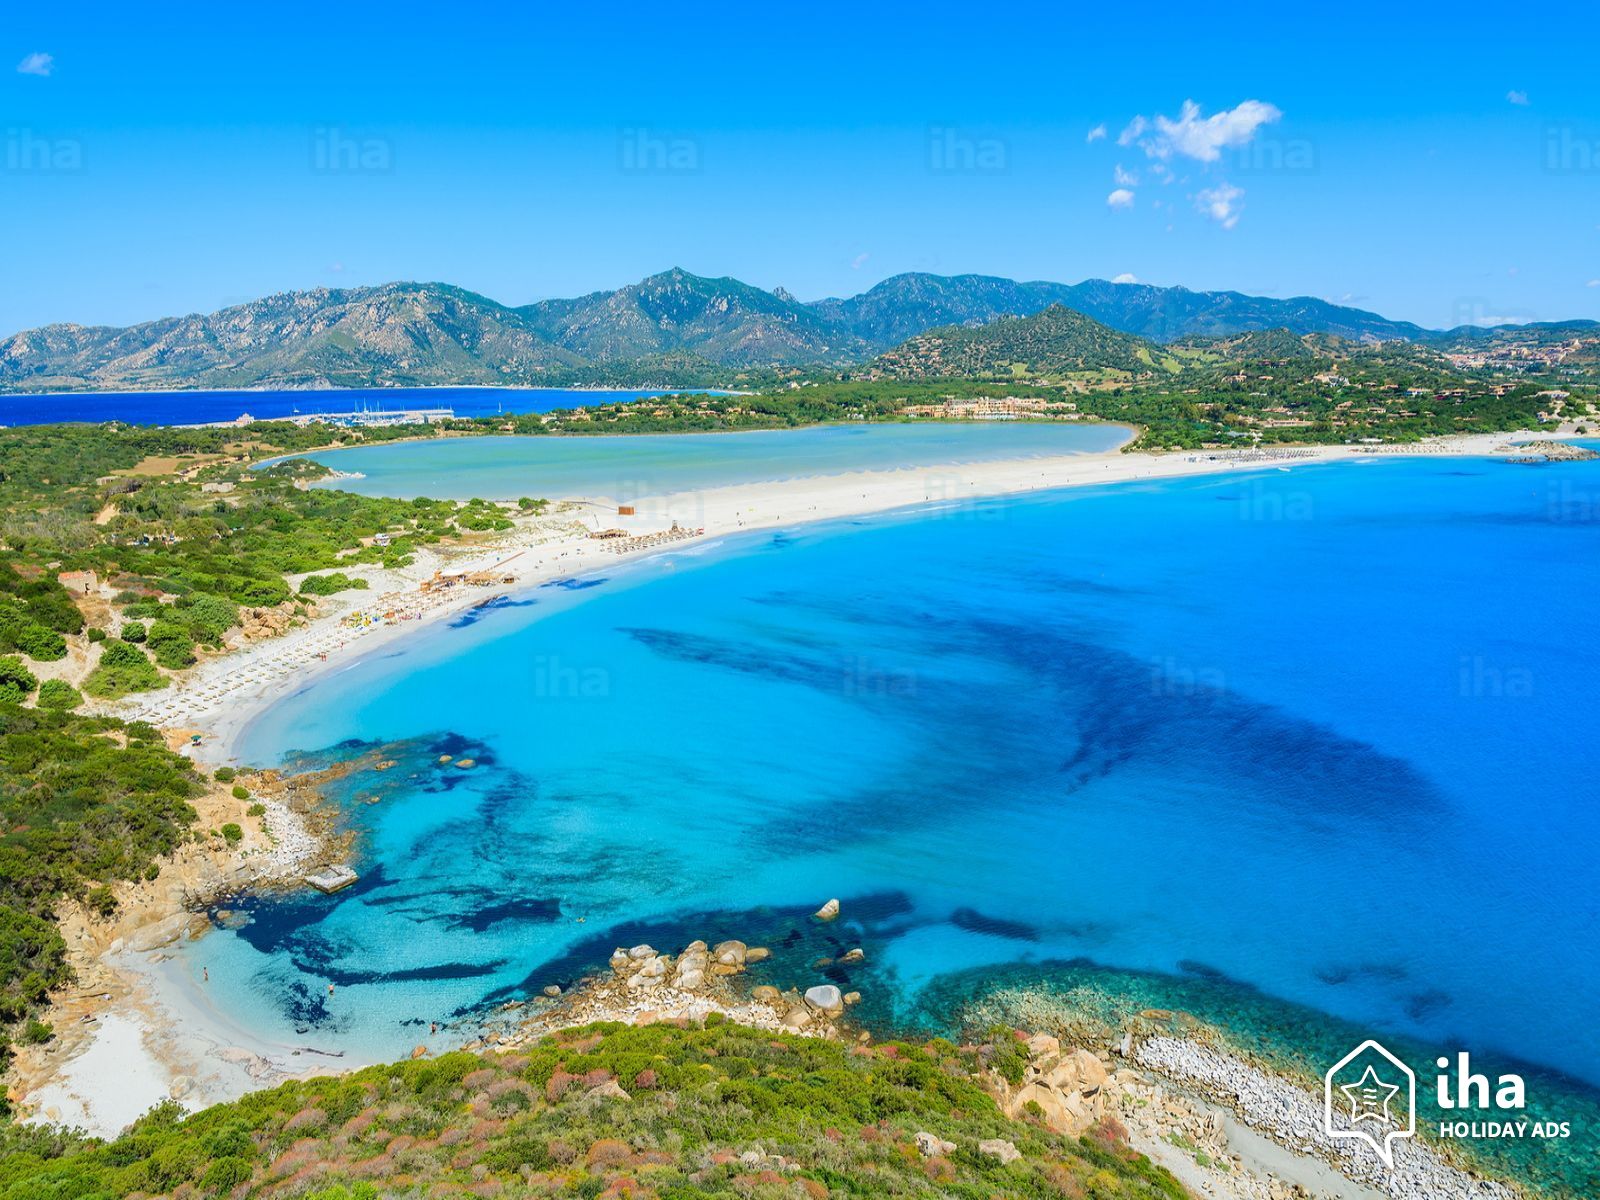 L’estensione del Piano paesaggistico regionale della Sardegna agli ambiti interni: una proposta metodologica